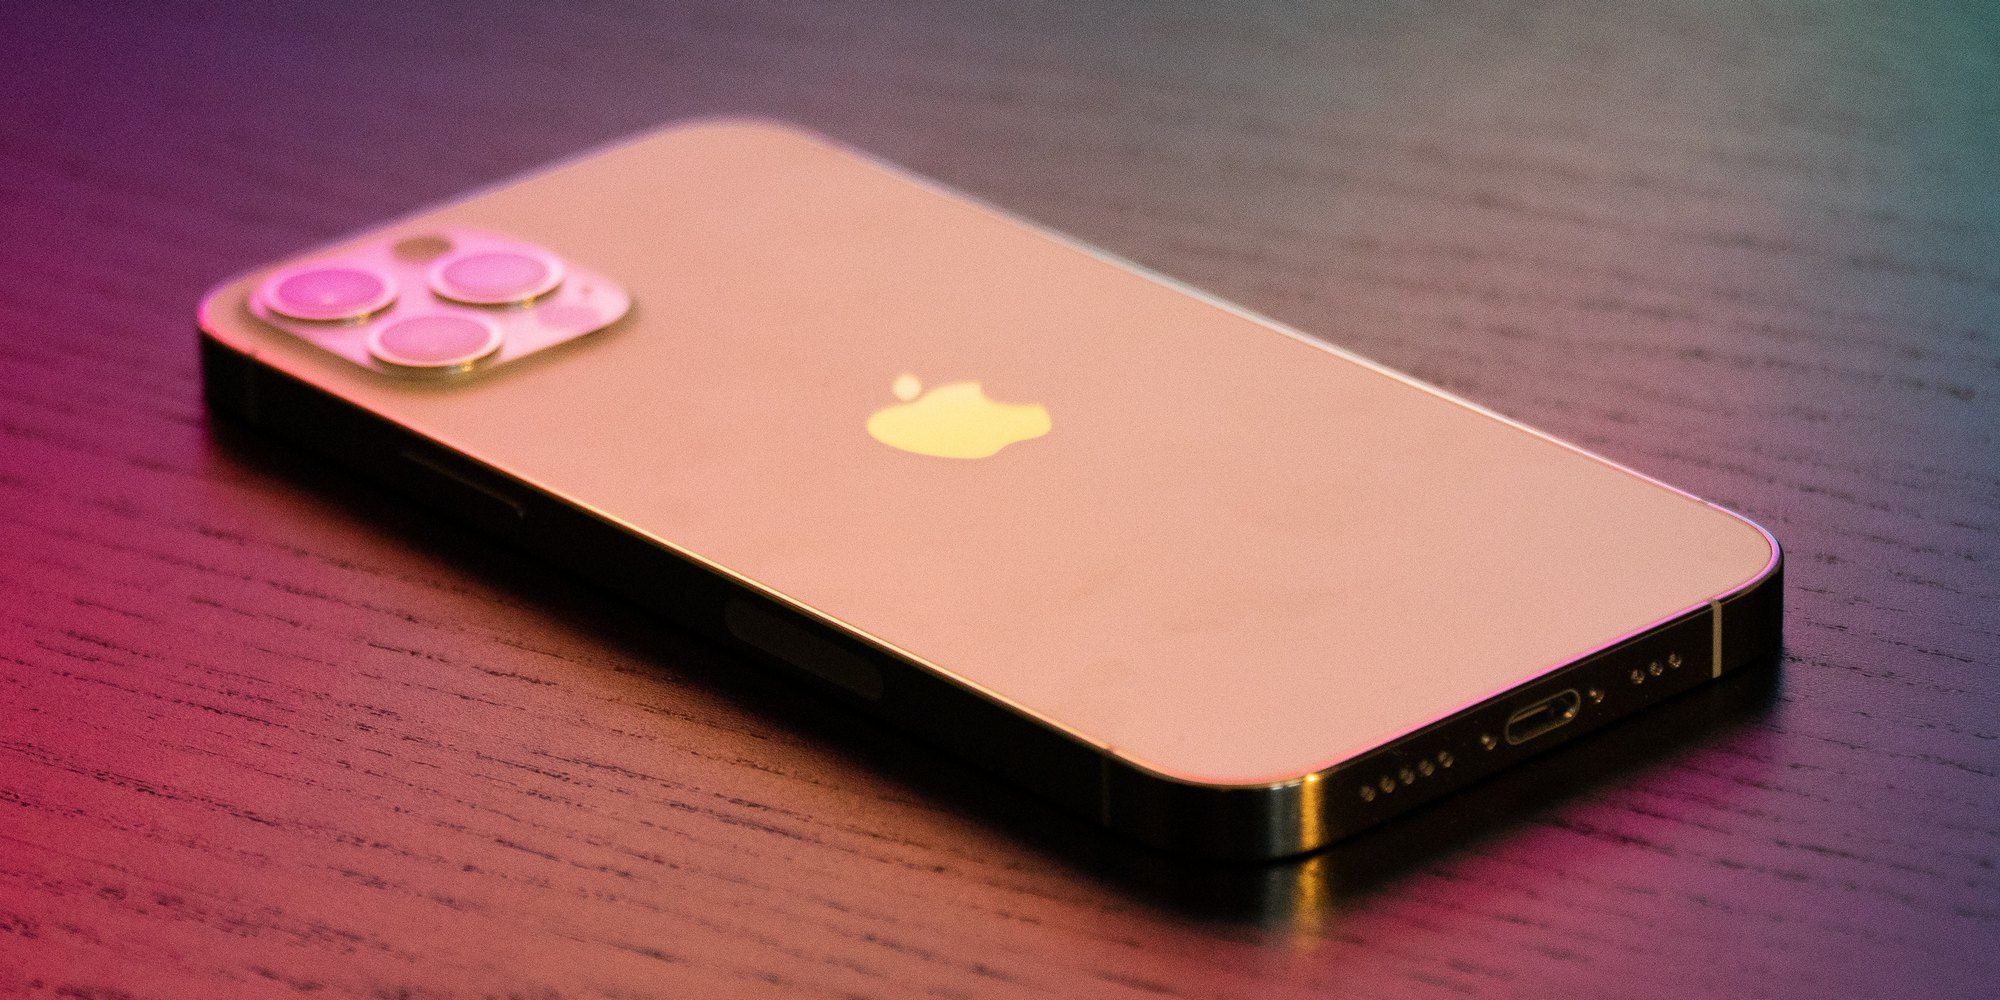 Opciones de almacenamiento y colores del iPhone 13 recién filtradas: aquí están